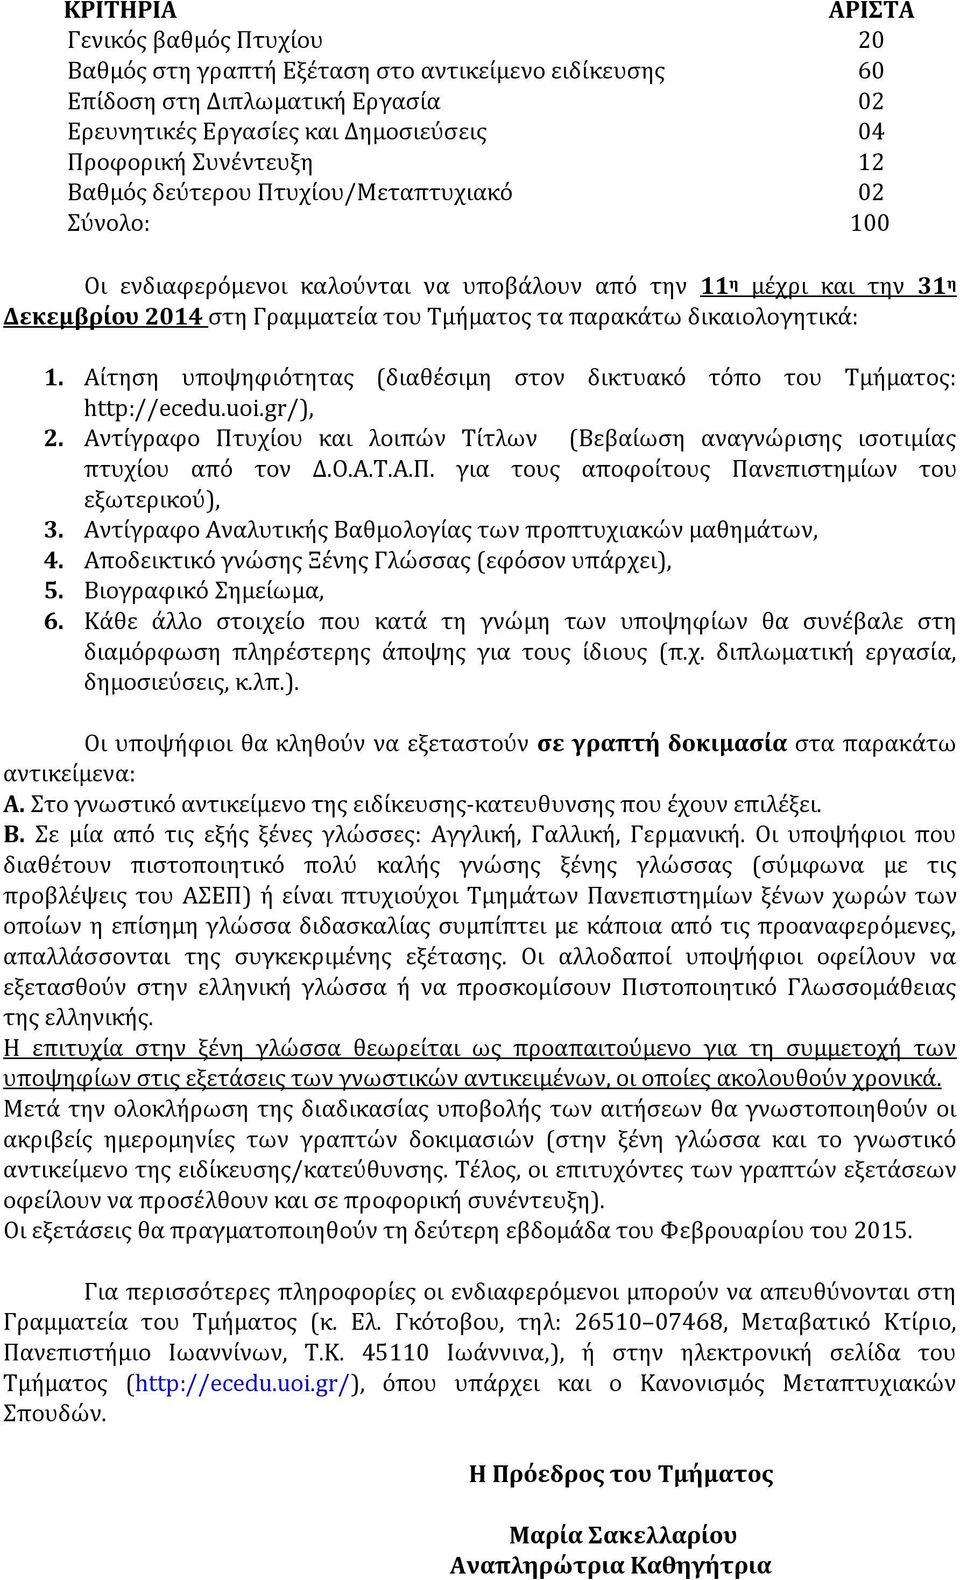 Αίτηση υποψηφιότητας (διαθέσιμη στον δικτυακό τόπο του Τμήματος: http://ecedu.uoi.gr/), 2. Αντίγραφο Πτυχίου και λοιπών Τίτλων (Βεβαίωση αναγνώρισης ισοτιμίας πτυχίου από τον Δ.Ο.Α.Τ.Α.Π. για τους αποφοίτους Πανεπιστημίων του εξωτερικού), 3.